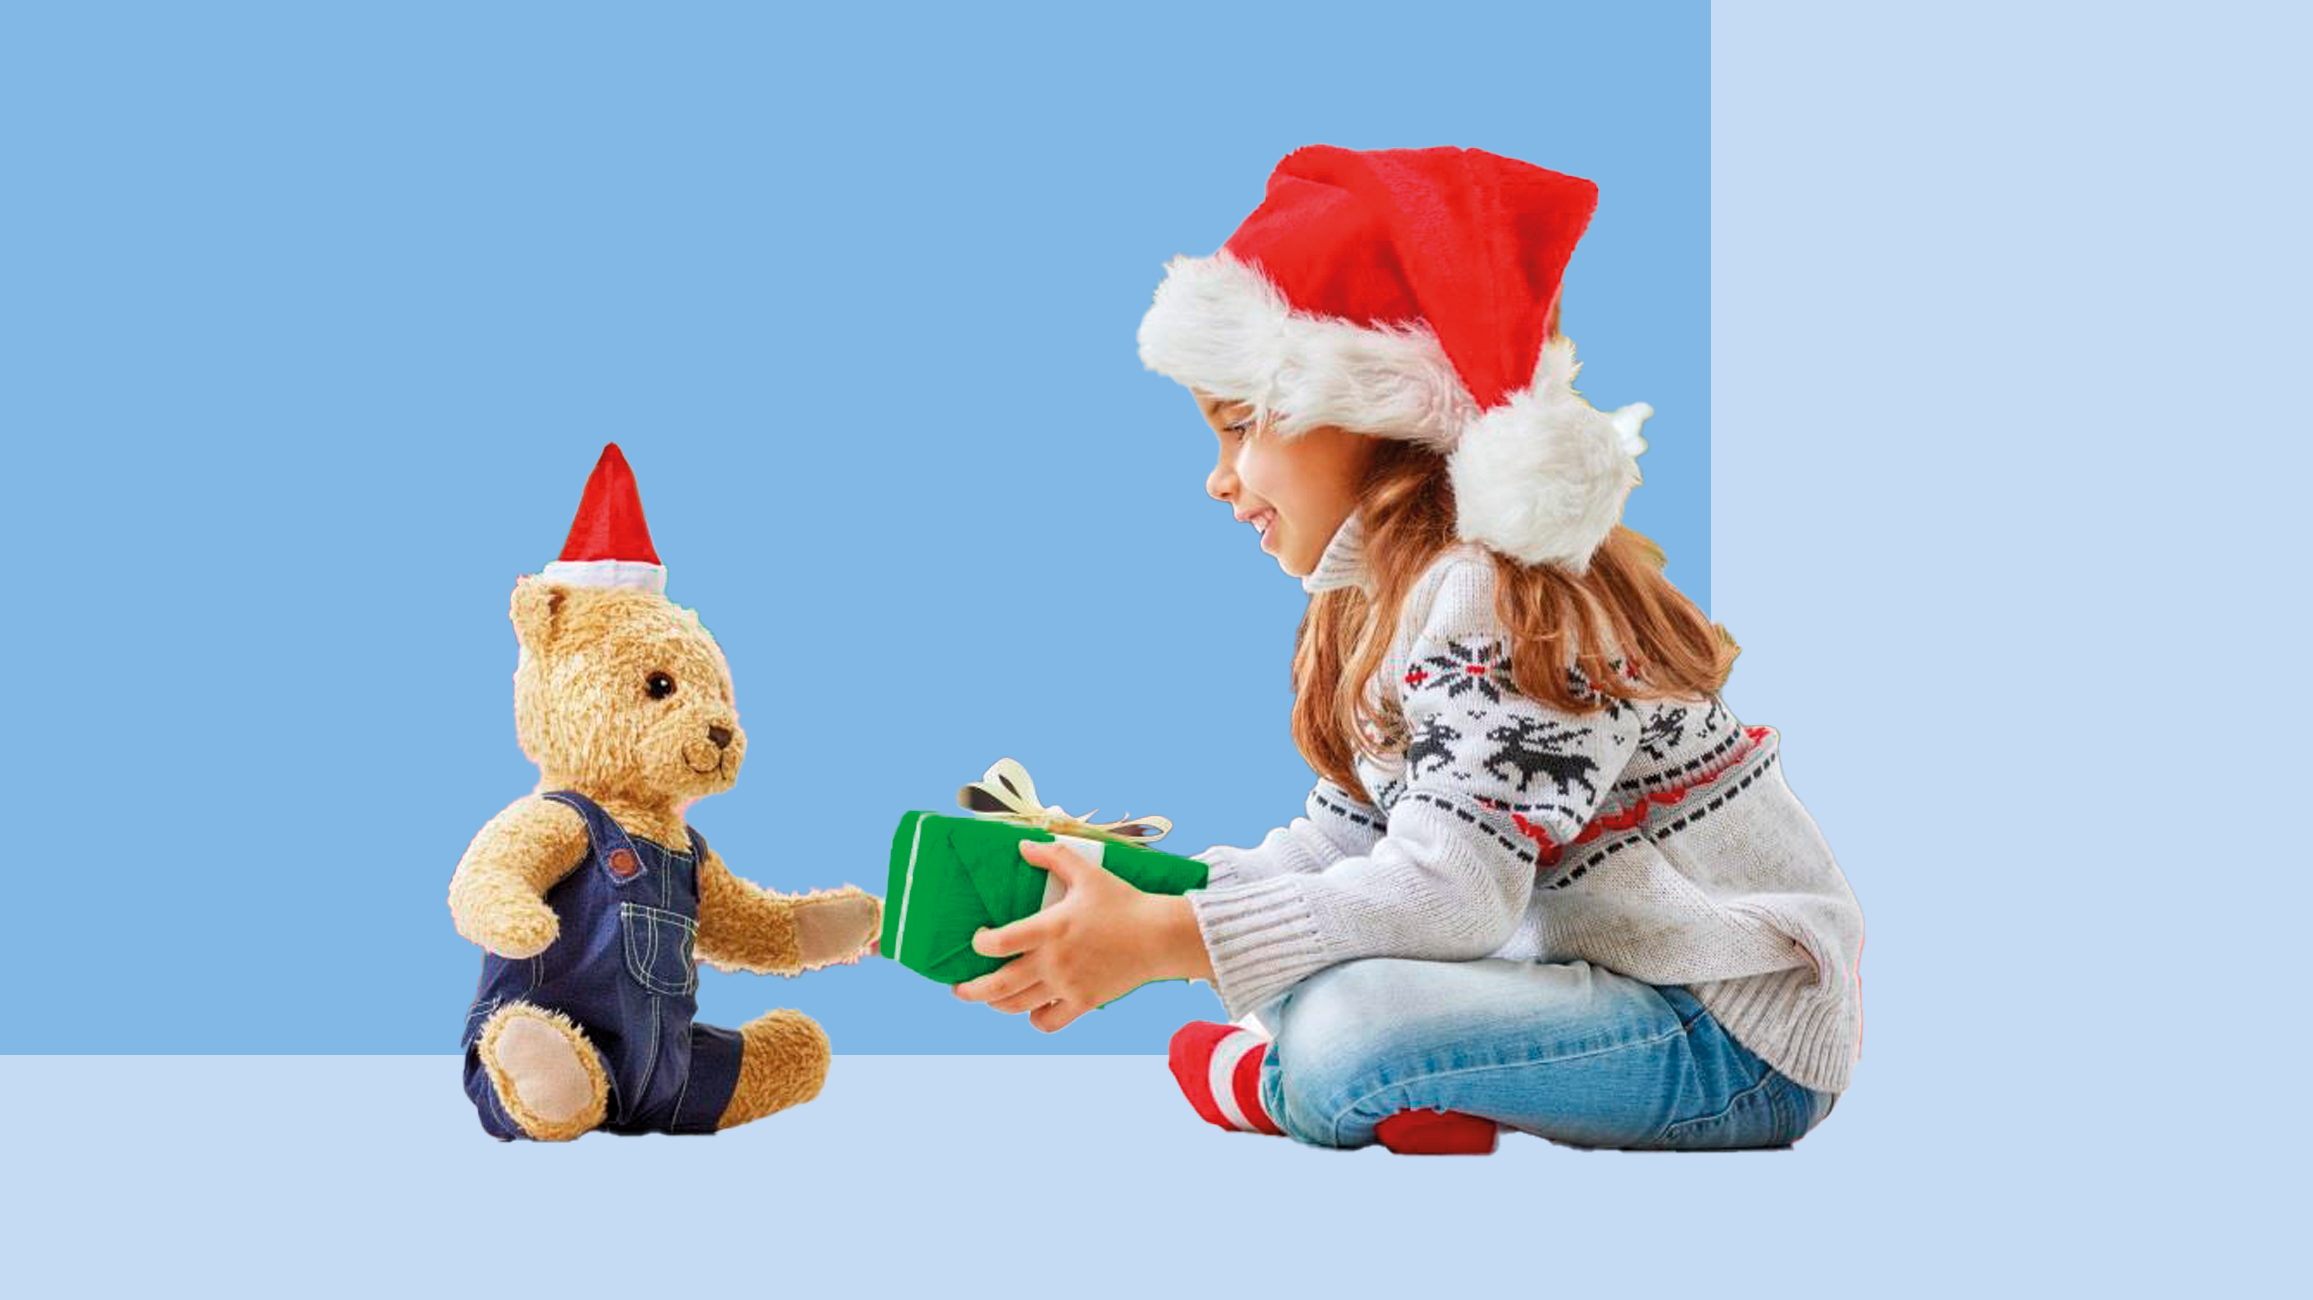 Памятка по выбору качественных и безопасных детских товаров, игрушек и новогодних подарков